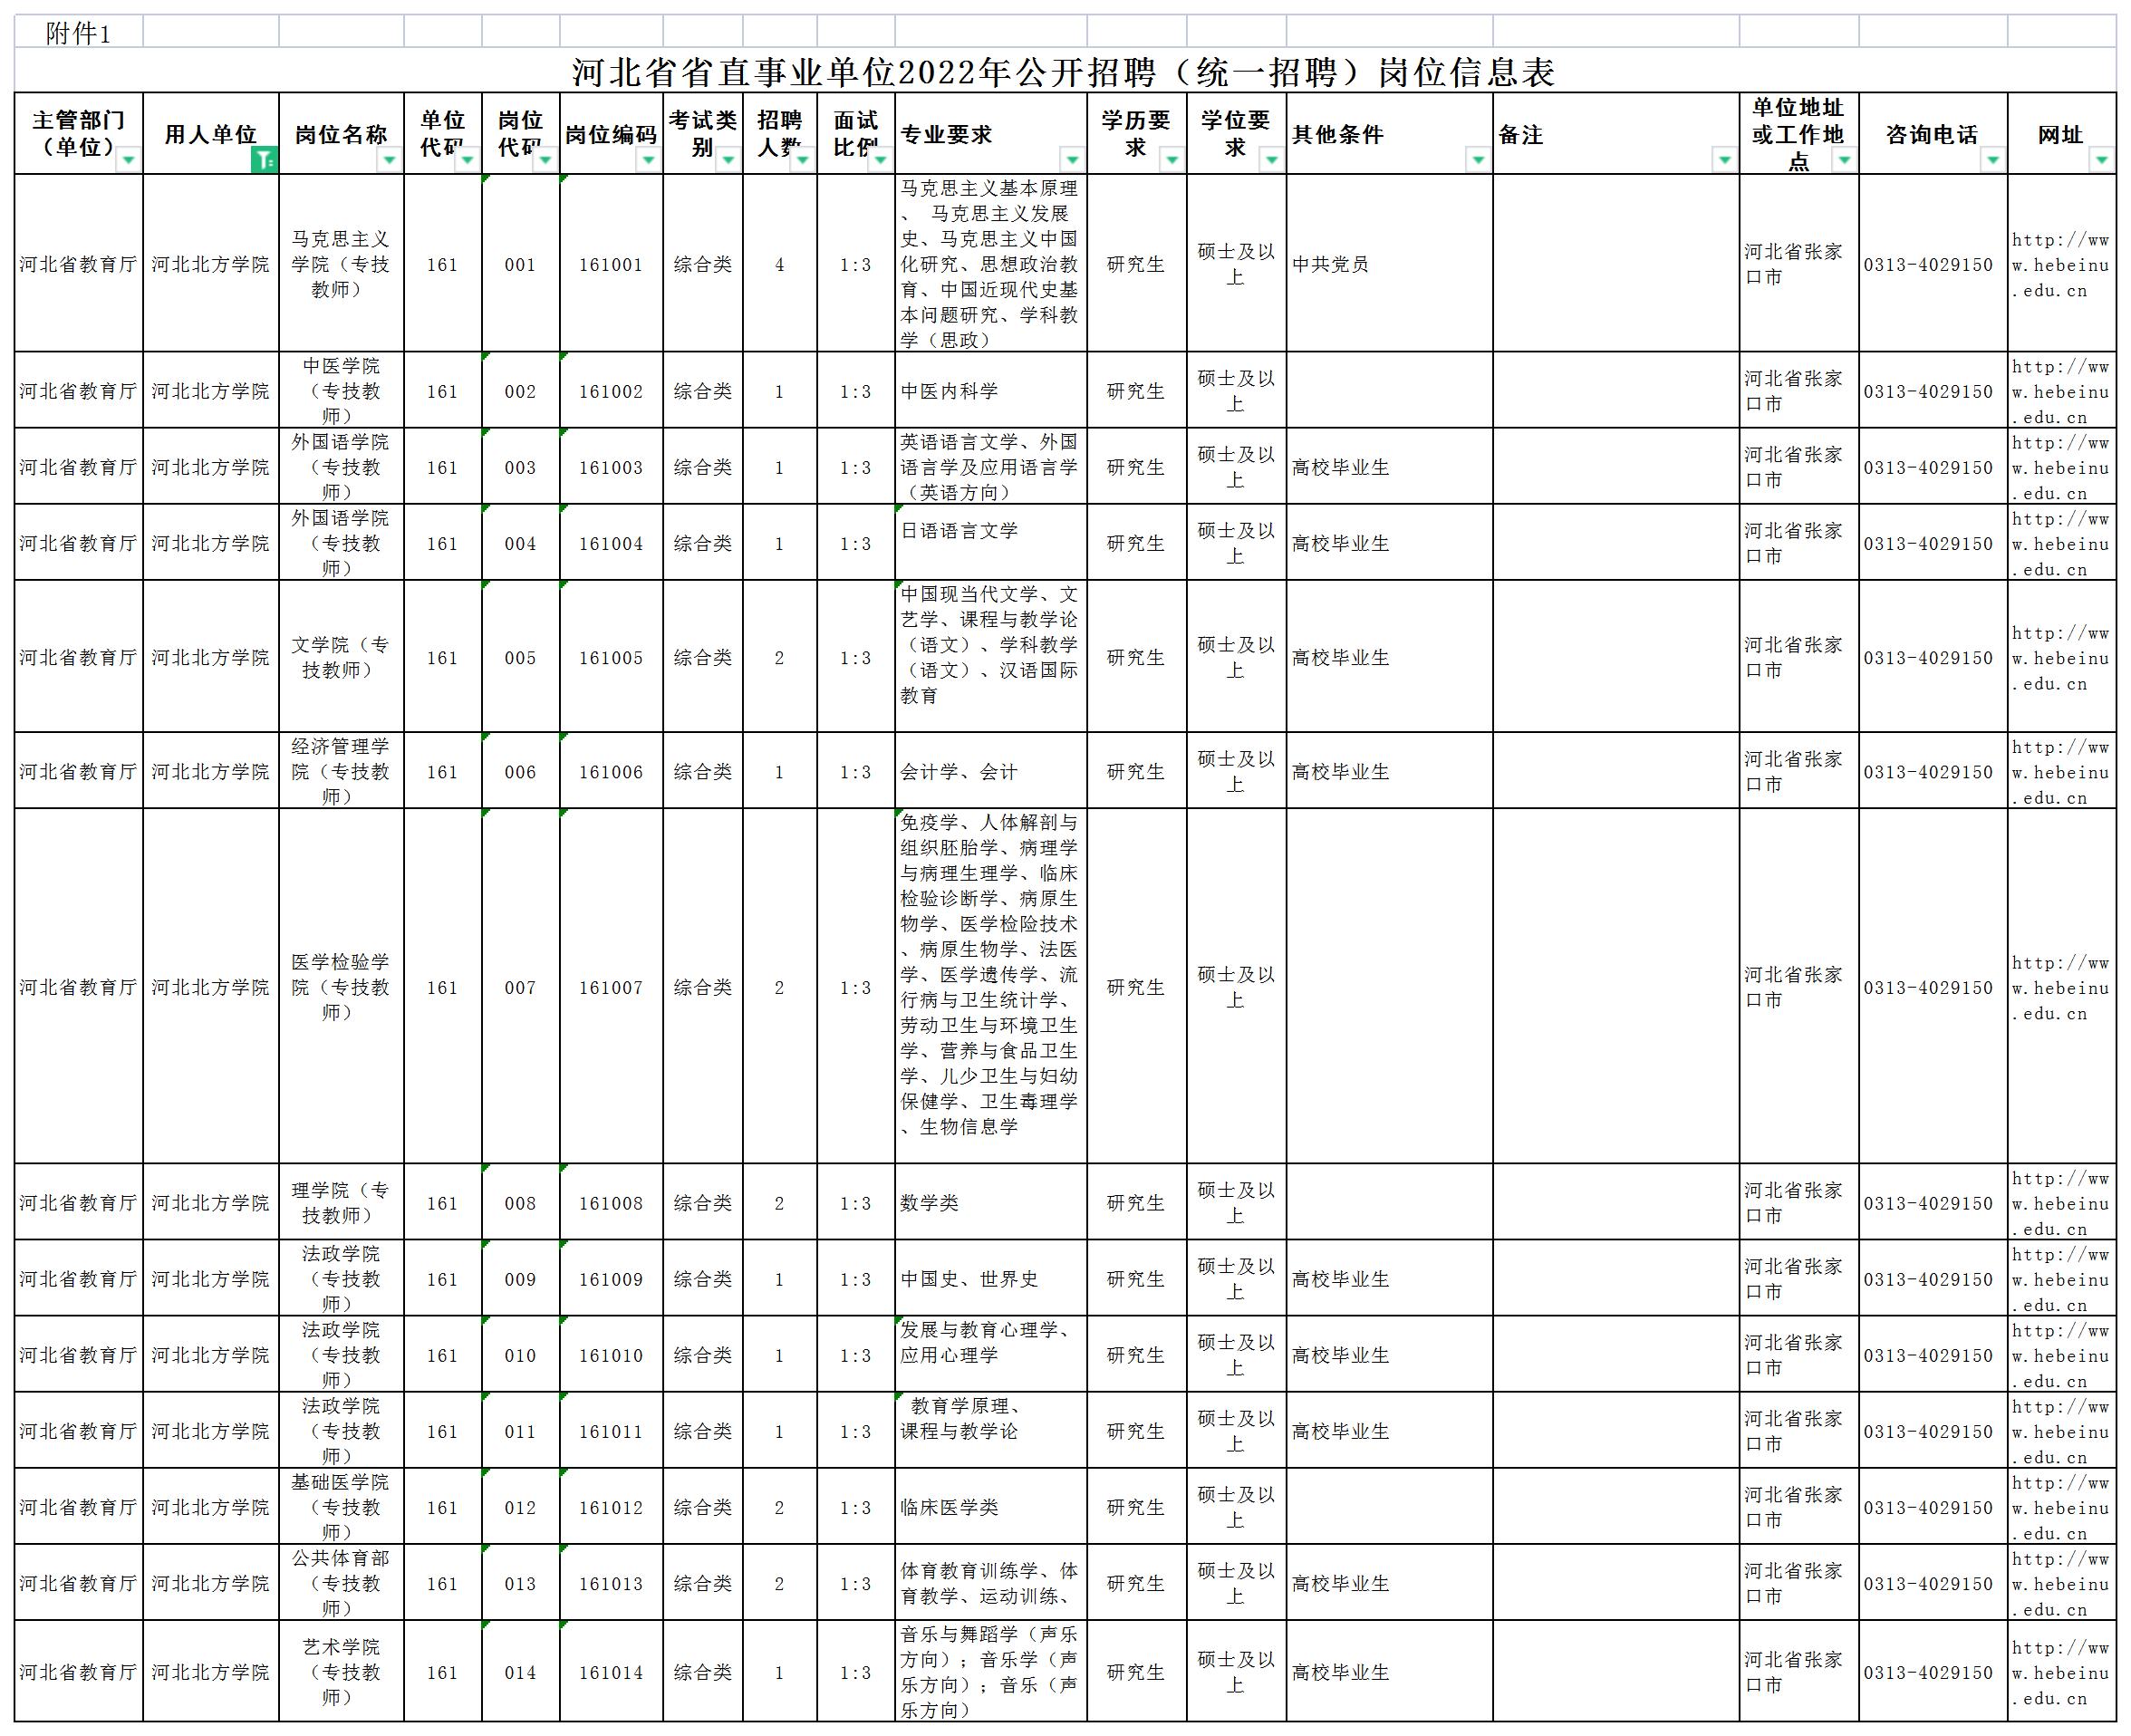 1.河北省省直事业单位2022年公开招聘（统一招聘）岗位信息表_A1Q738.jpg